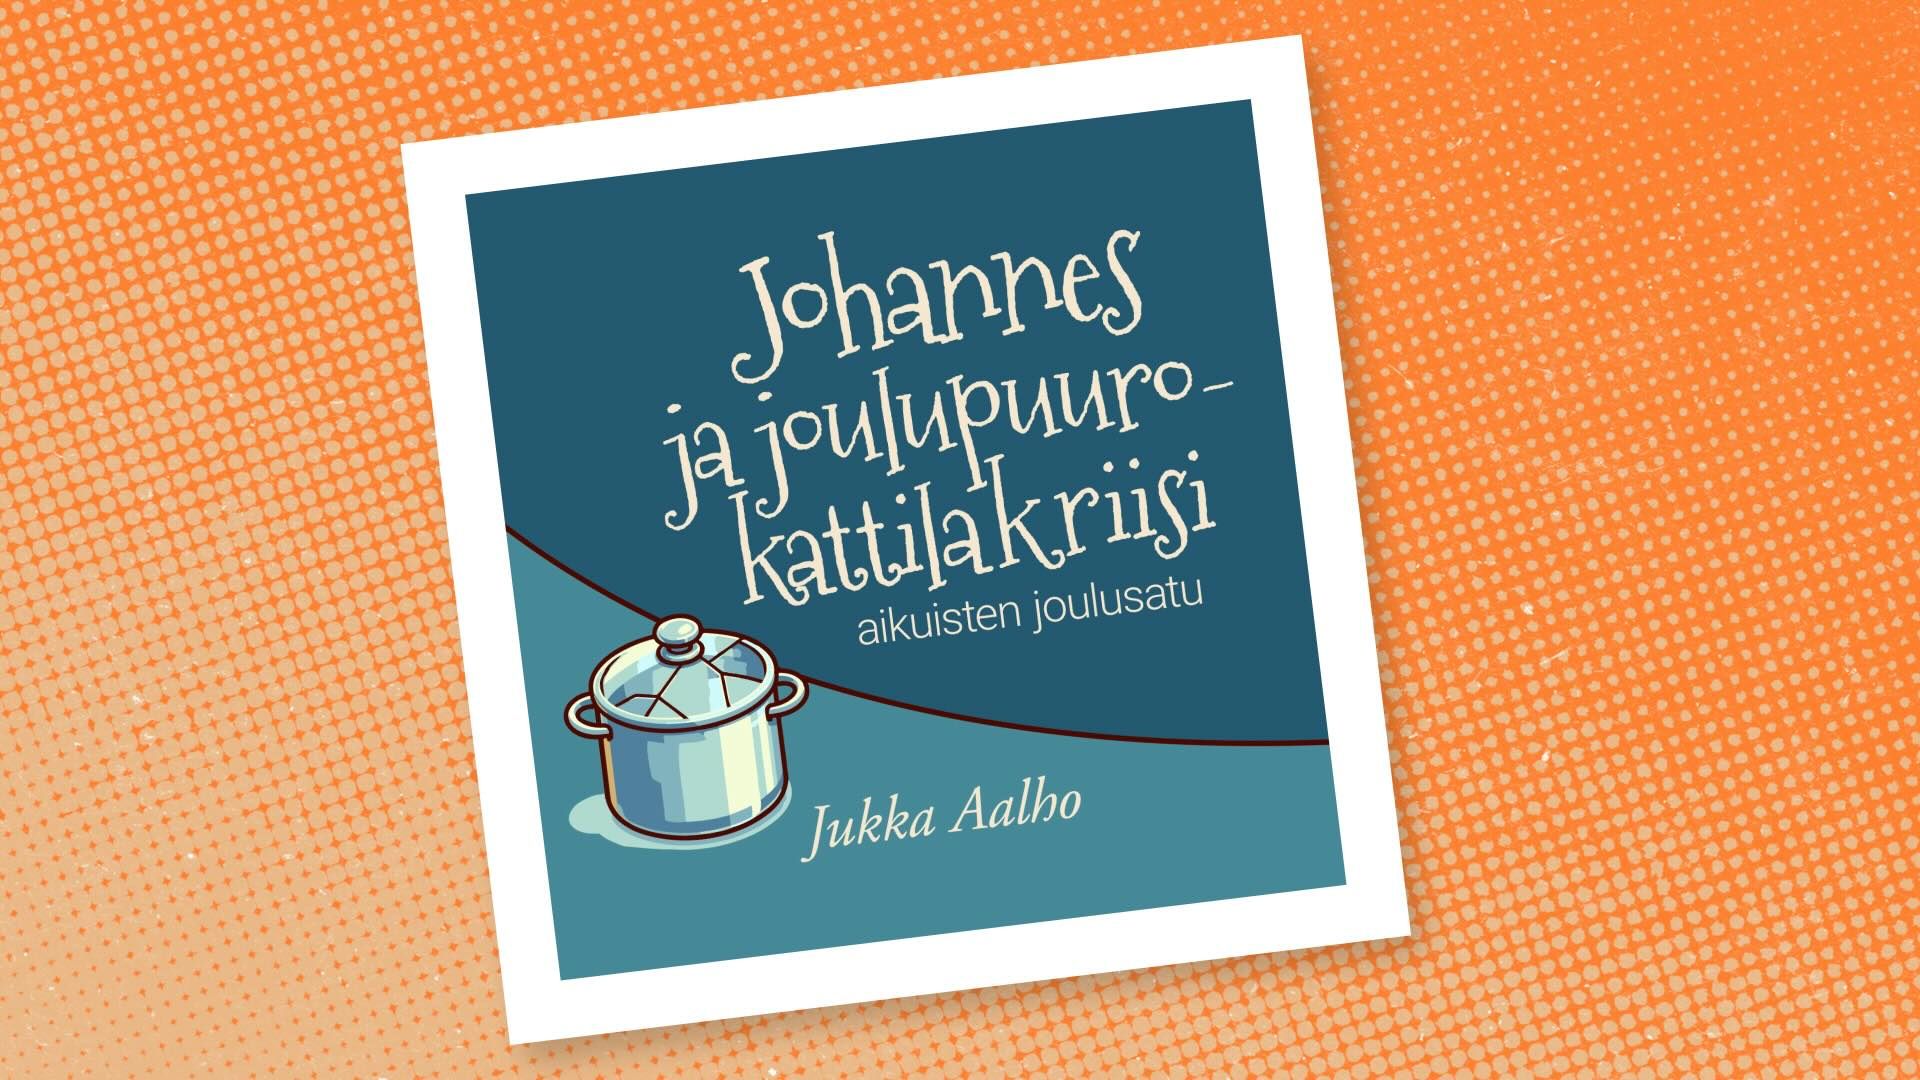 #141: Aikuisten joulutarina: Johannes ja joulupuurokattilakriisi – Jukka Aalho